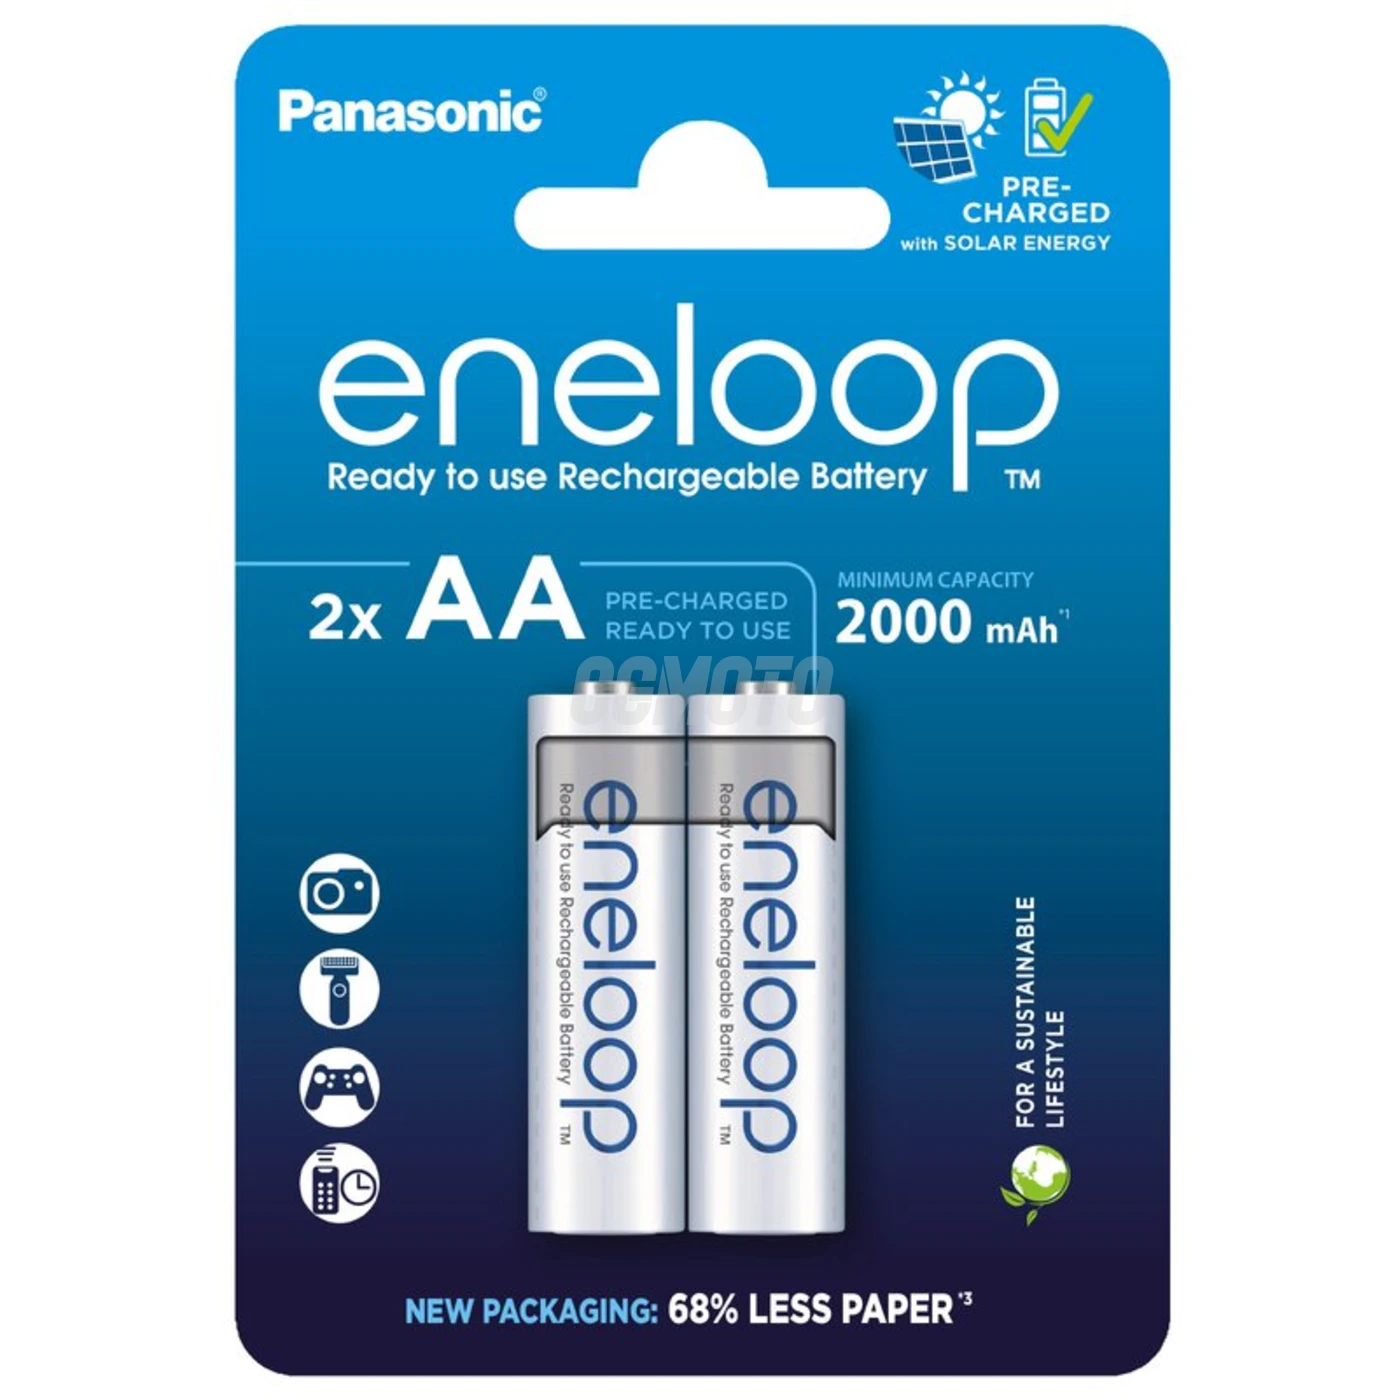 Panasonic Eneloop R6 AA 2000mAh x 2 pile ricaricabili (blister) 